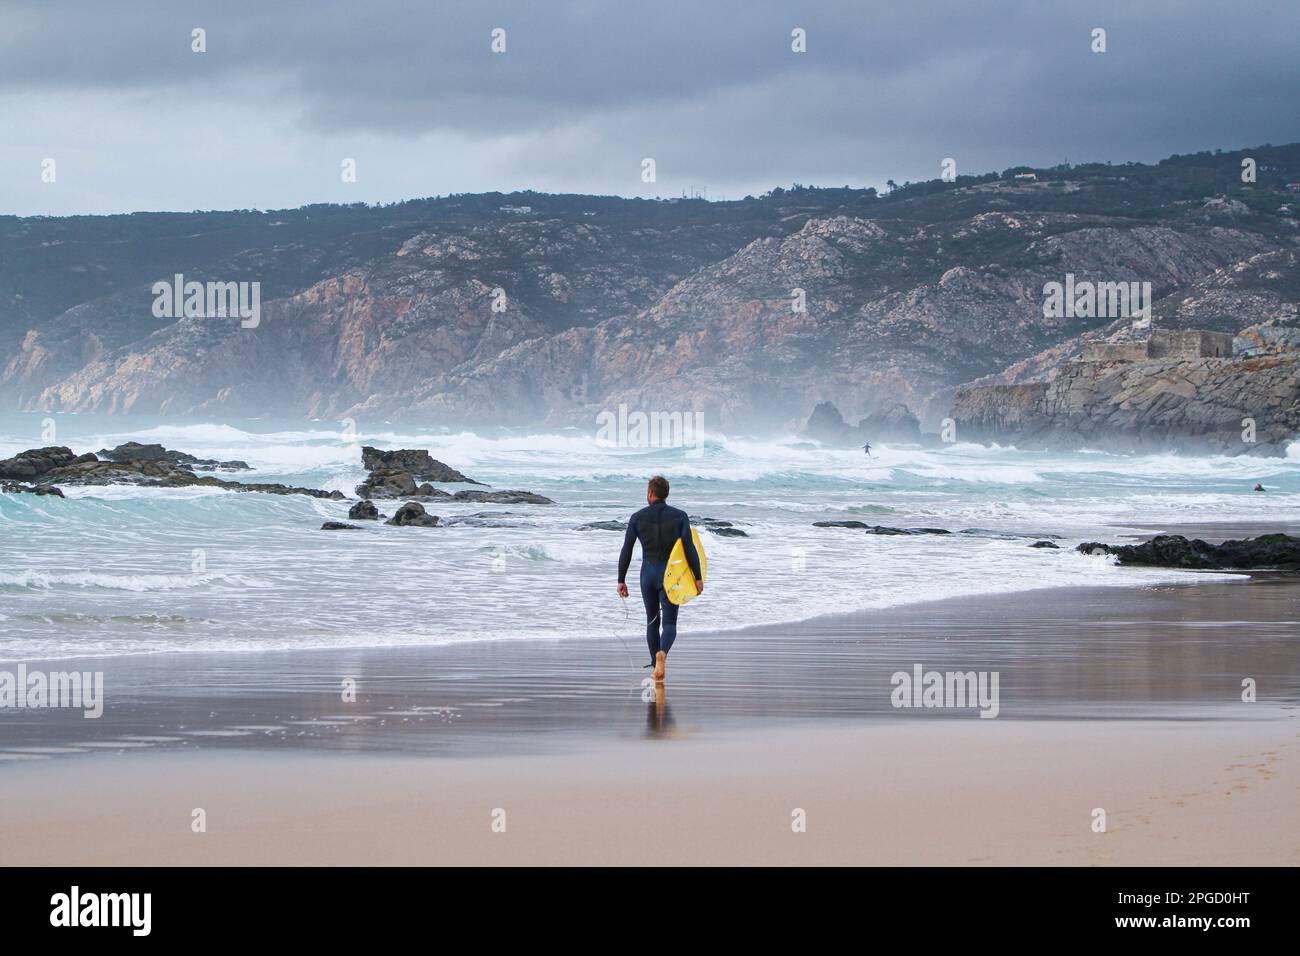 Un surfeur mâle marchant sur une plage de sable vers l'océan transportant une planche de surf sous son bras. Banque D'Images